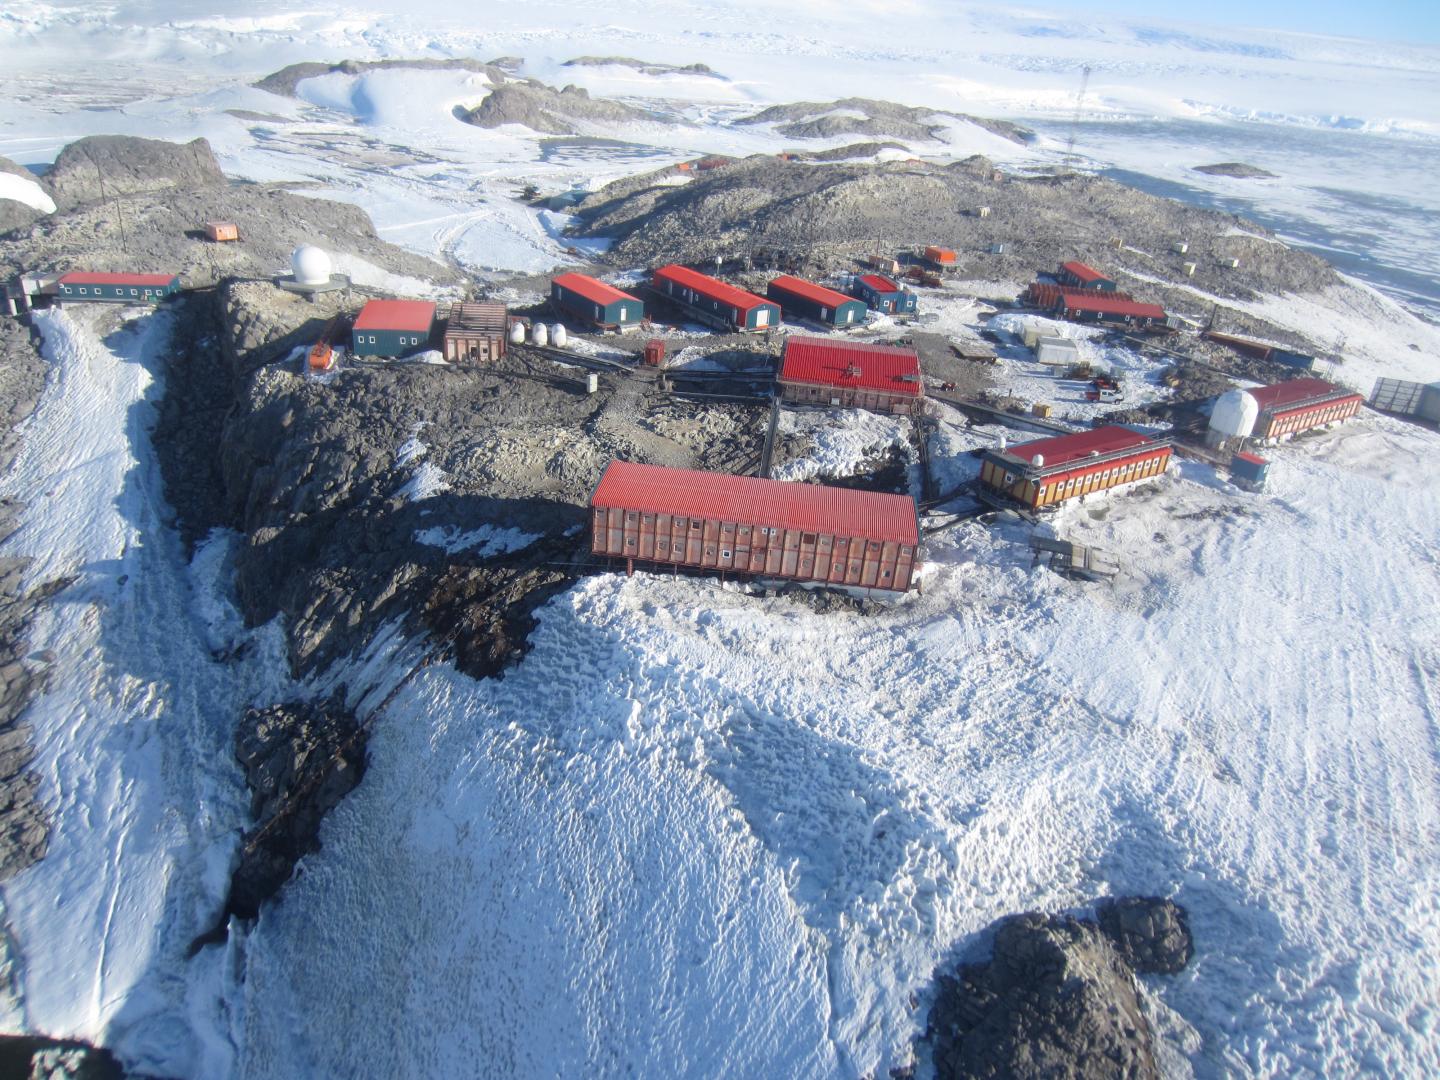 Dumont d'Urville Station in Antarctica